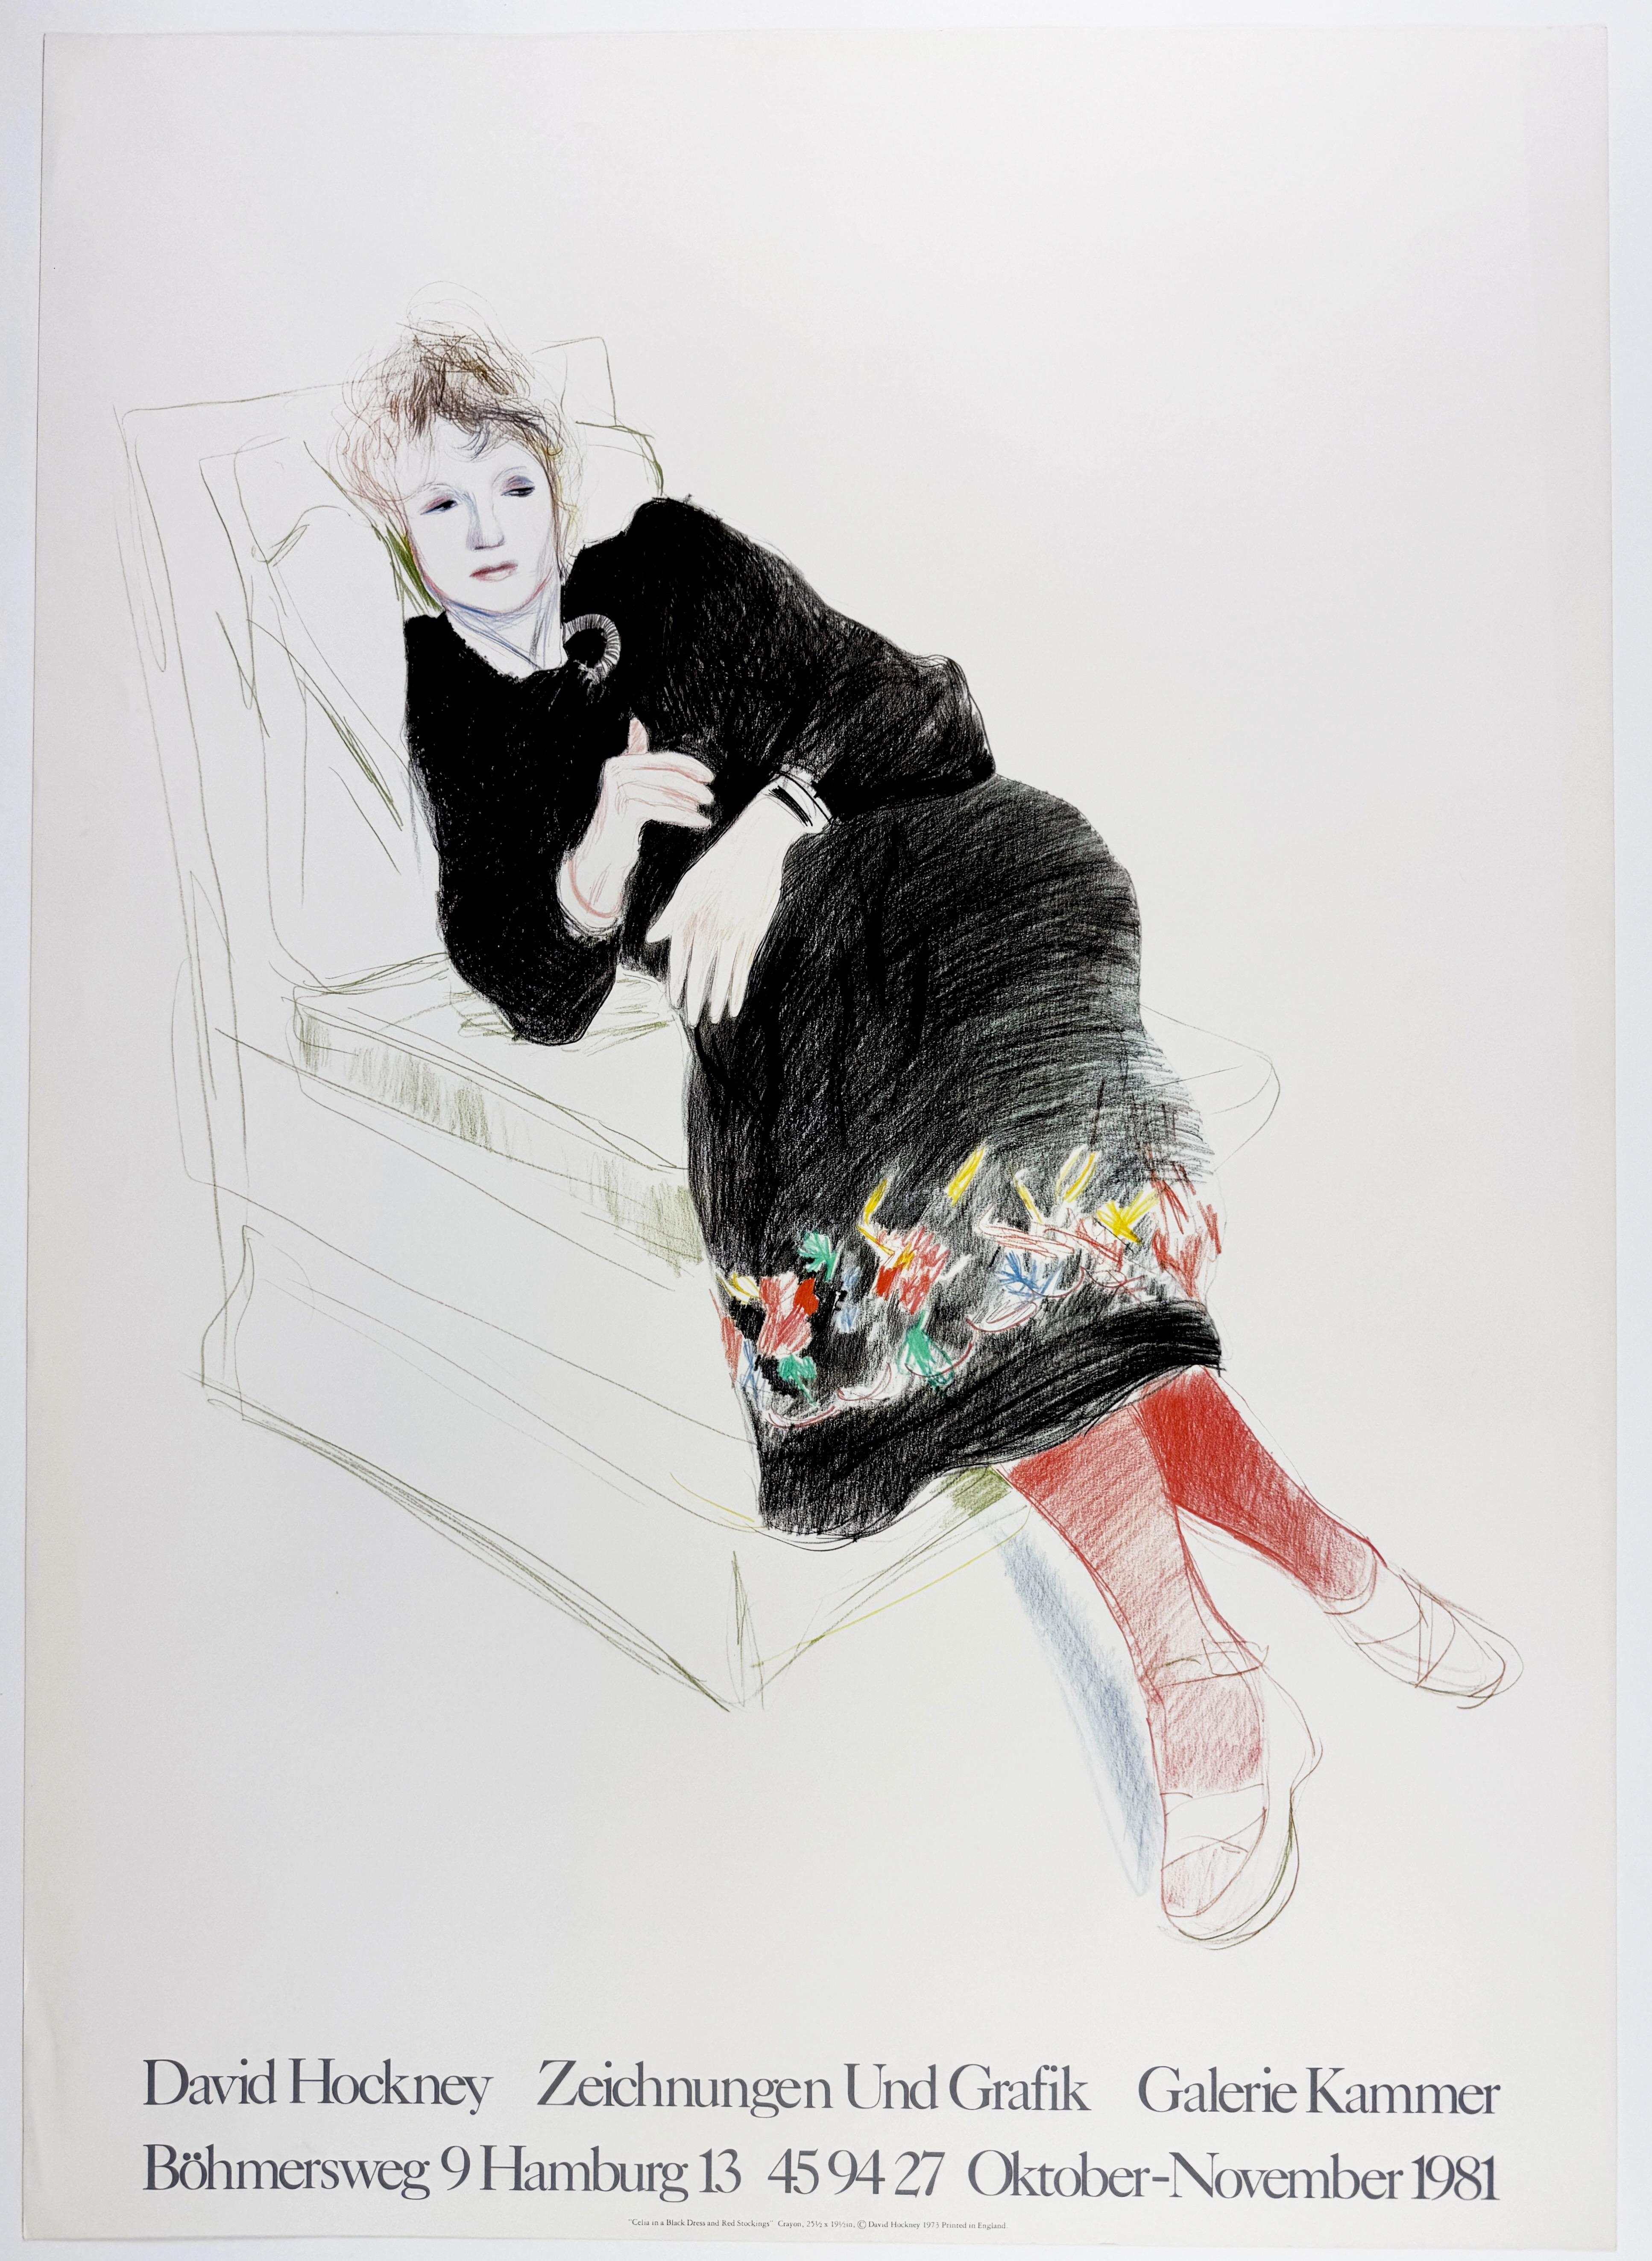 David Hockney Portrait Print - Vintage Hockney poster Kammer 1981 Celia in a Black Dress and Red Stockings